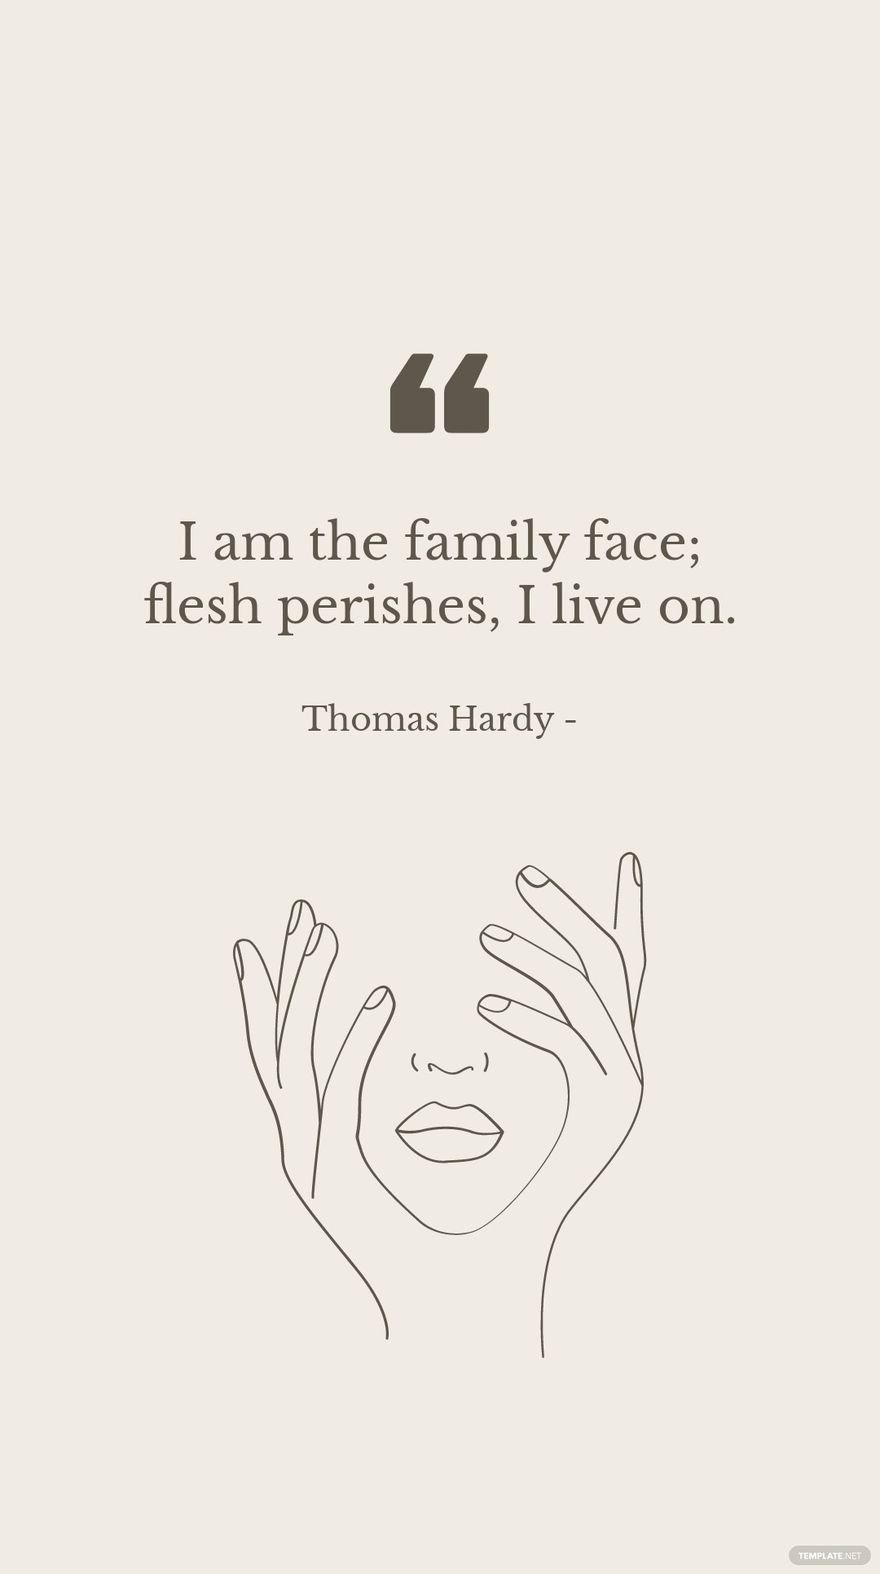 Free Thomas Hardy - I am the family face; flesh perishes, I live on.